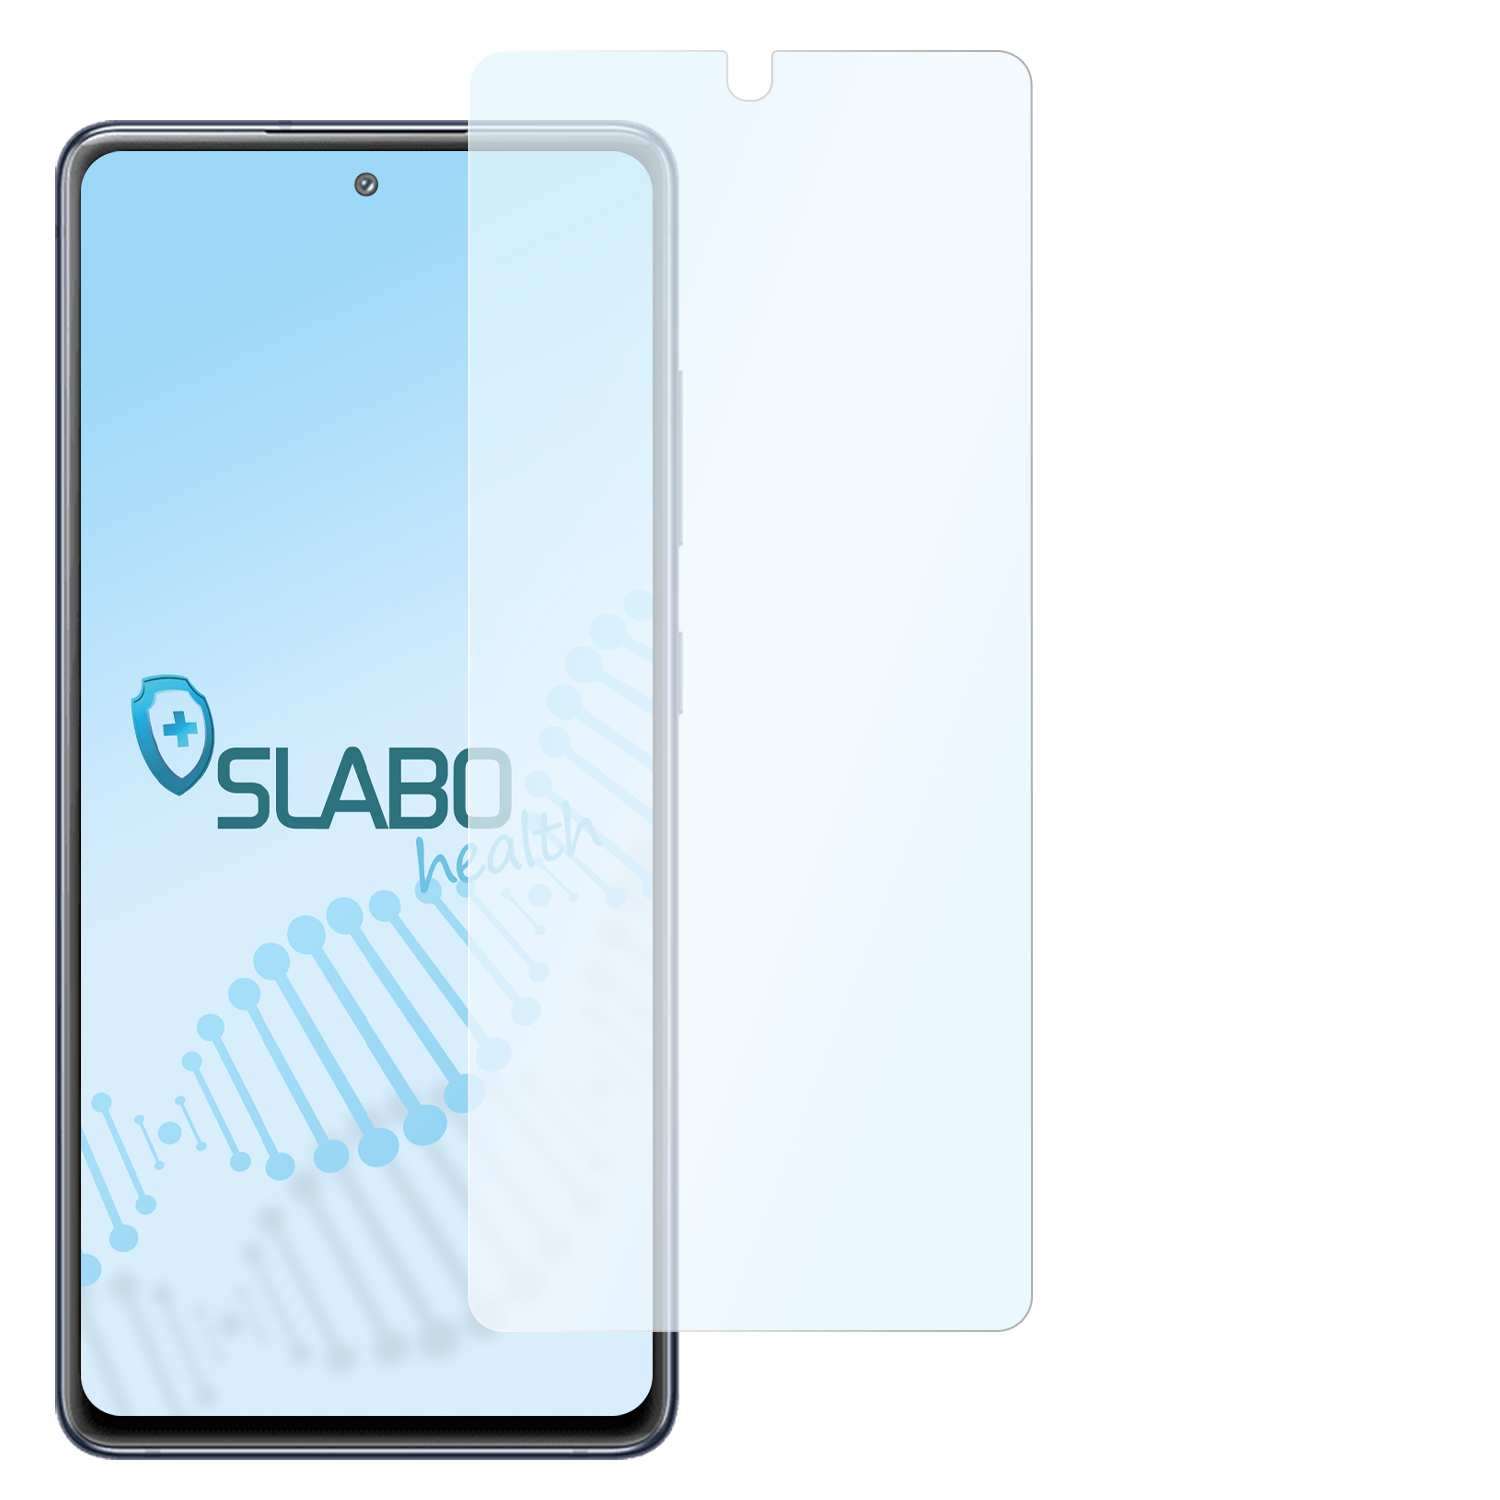 SLABO antibakterielle flexible Hybridglasfolie S20 Displayschutz(für Galaxy Samsung FE)